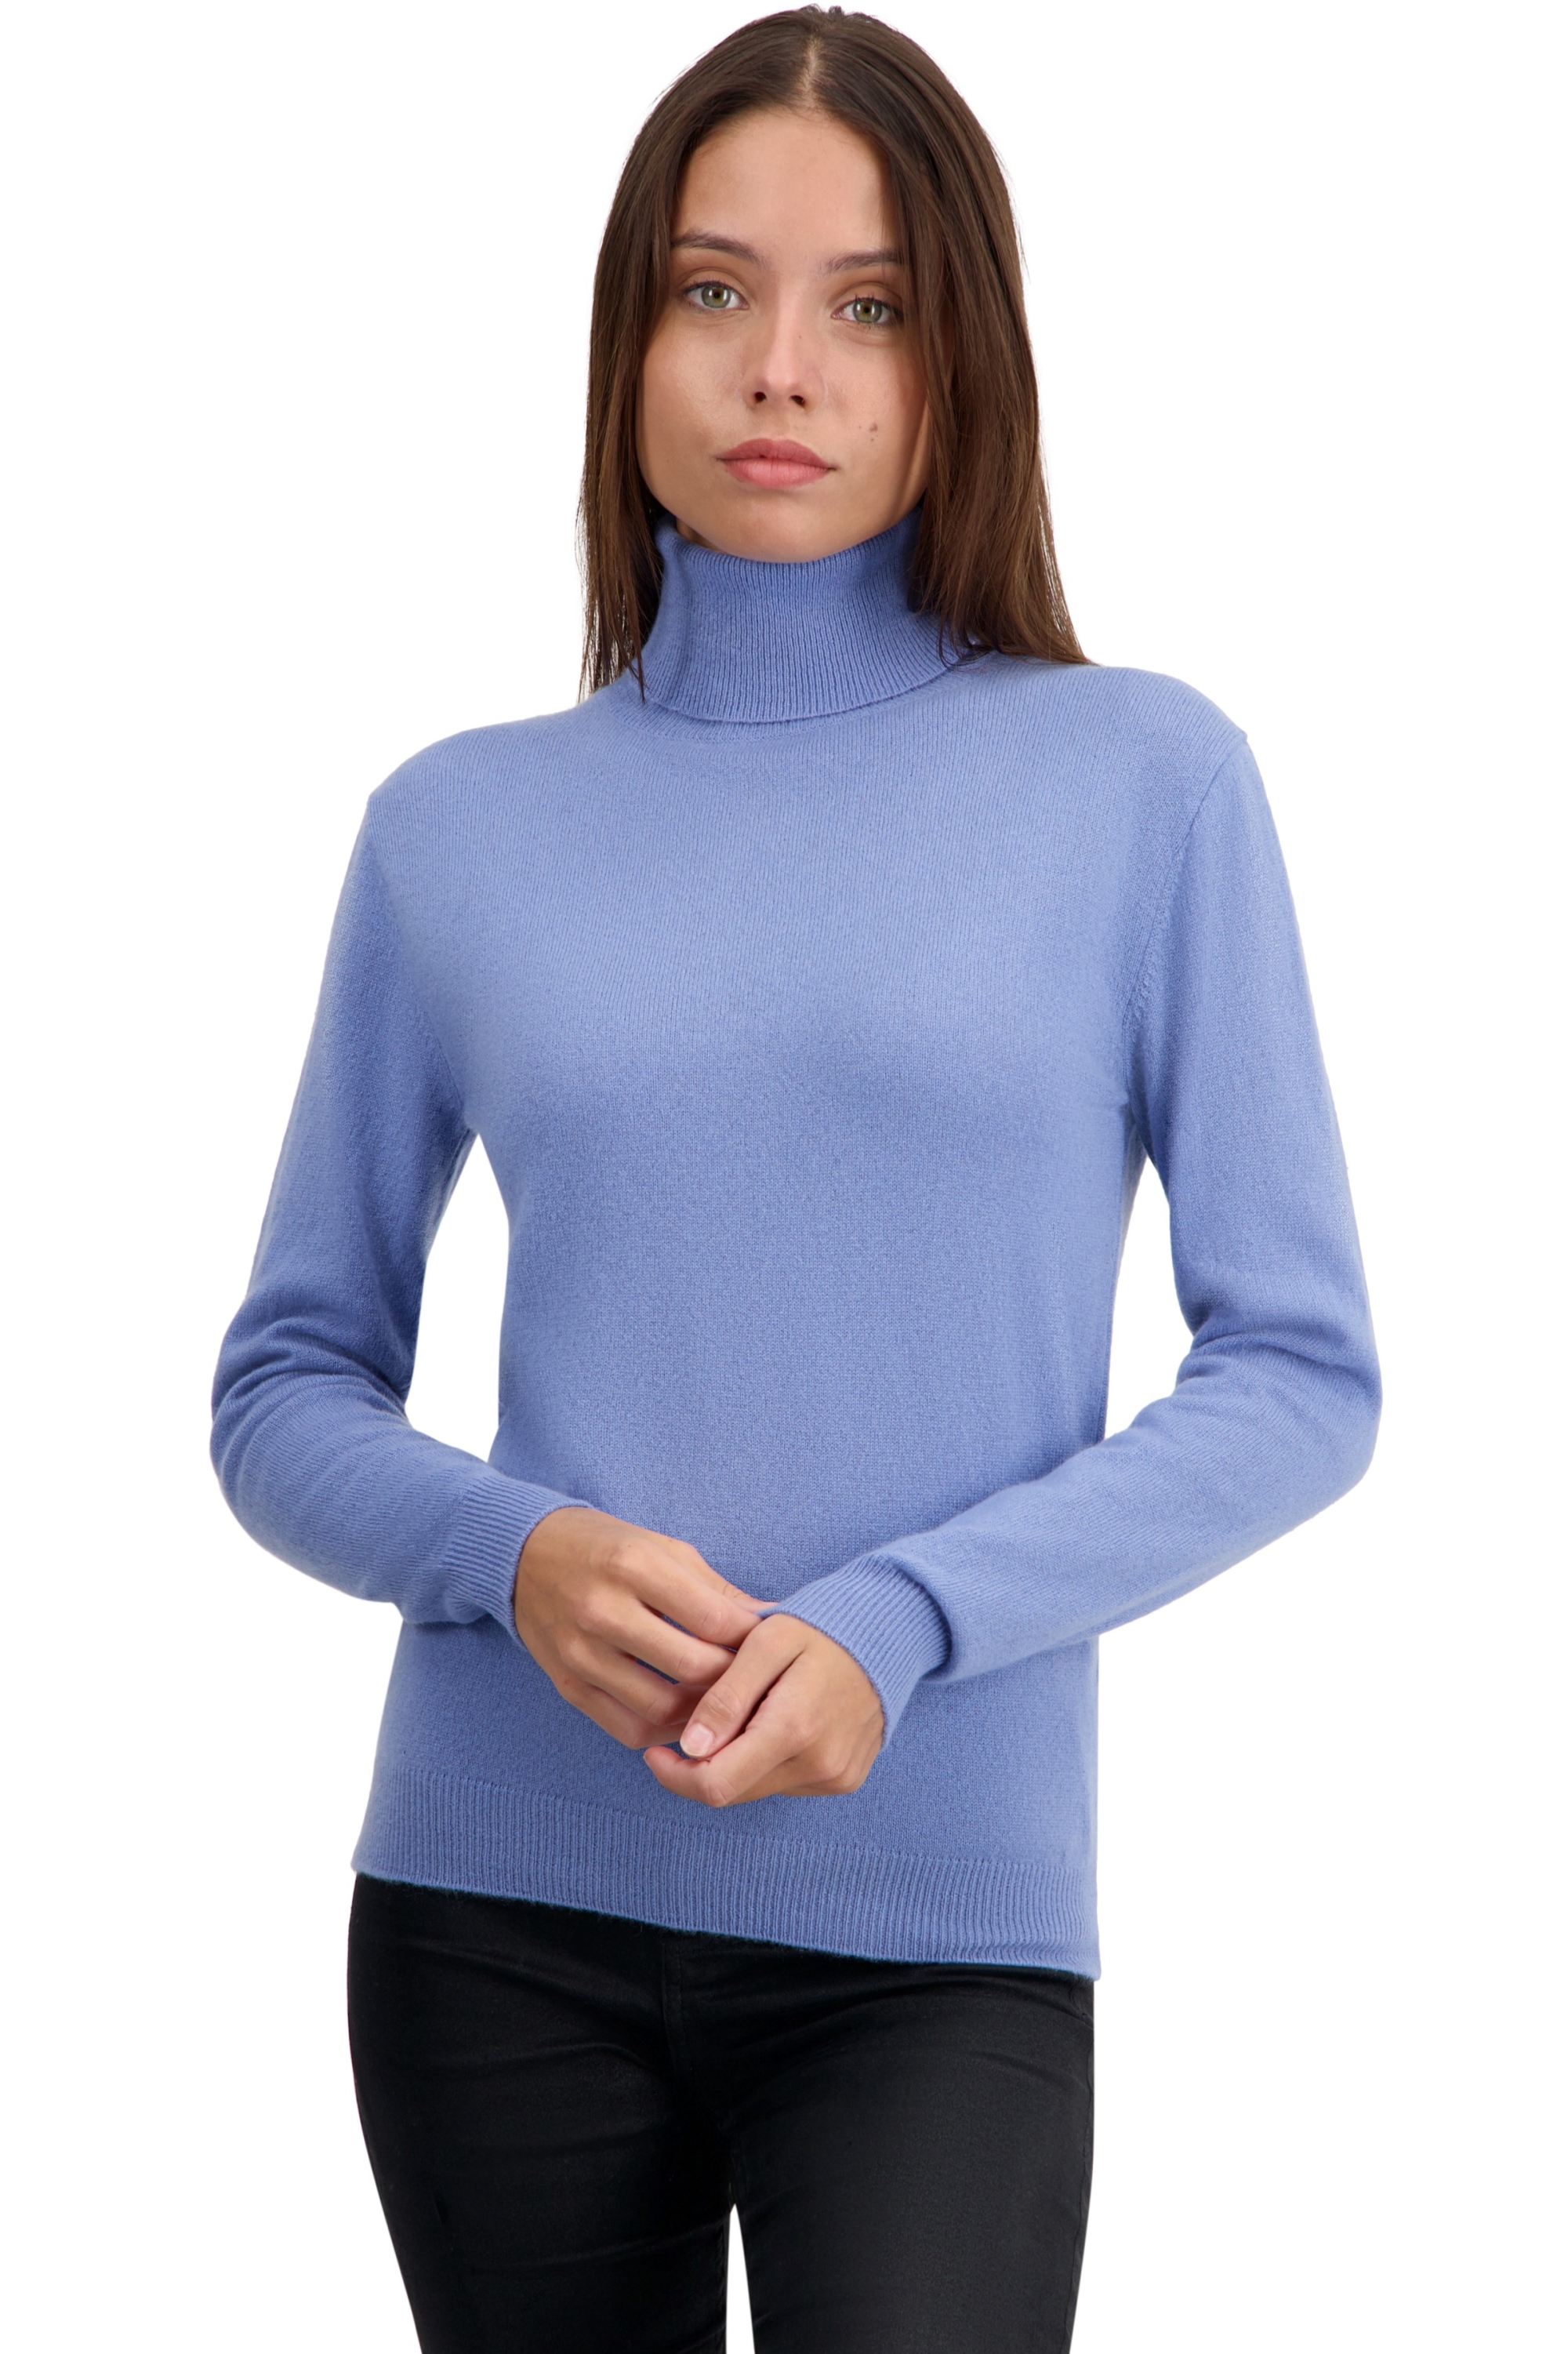 Kasjmier dames kasjmier basic pullovers voor lage prijzen tale first light blue 2xl